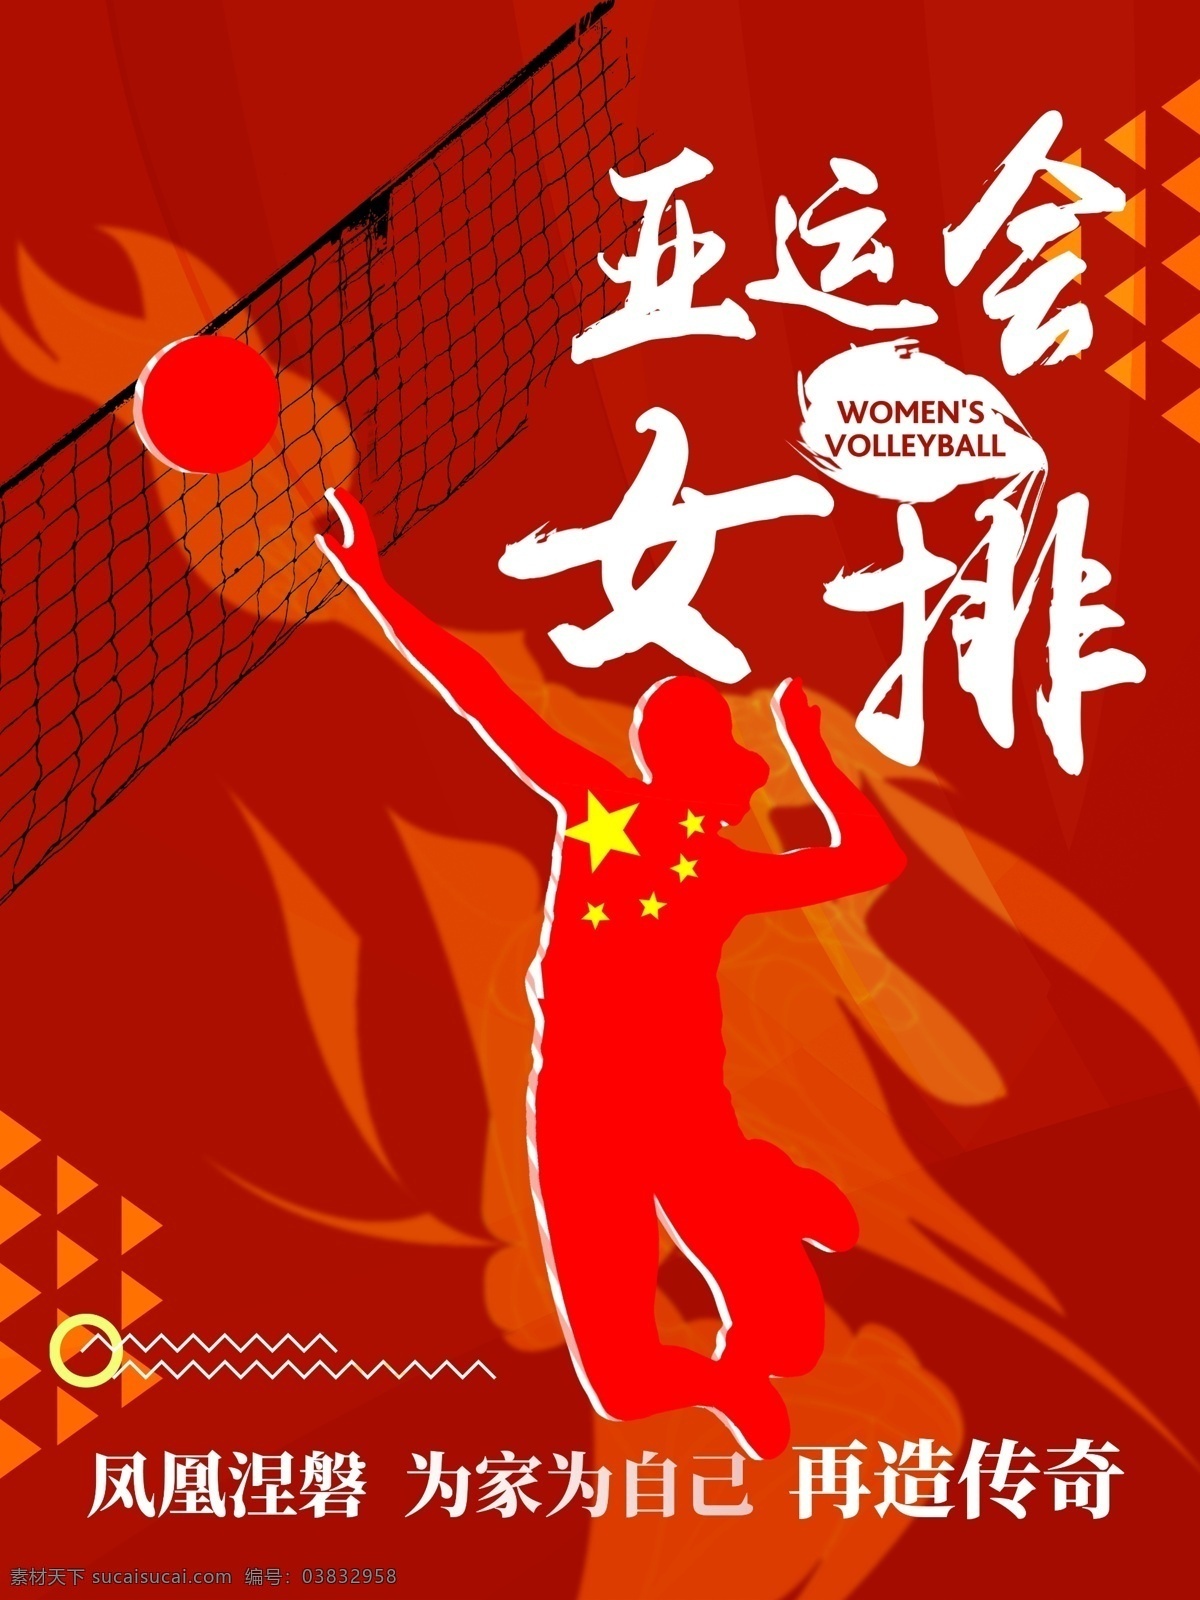 亚运会 女排 精神 宣传海报 宣传 海报 运动会